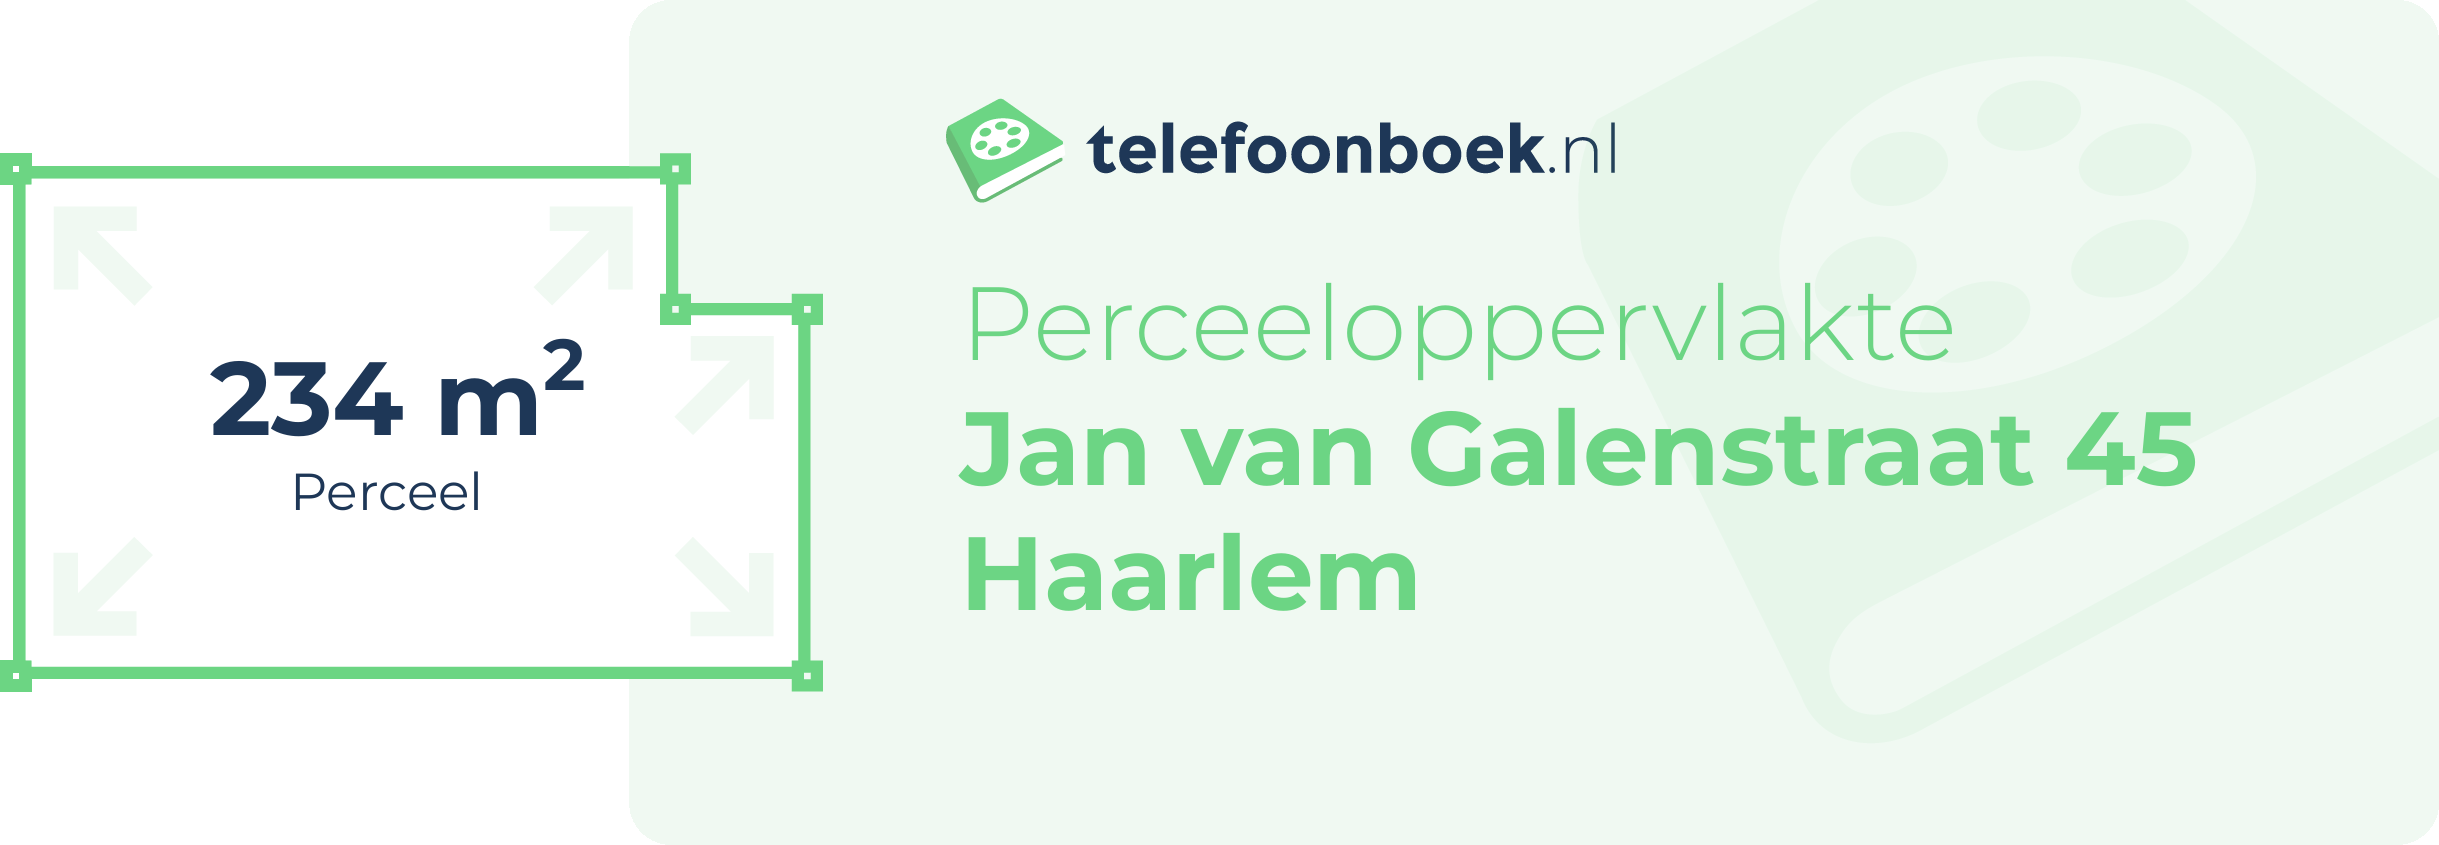 Perceeloppervlakte Jan Van Galenstraat 45 Haarlem